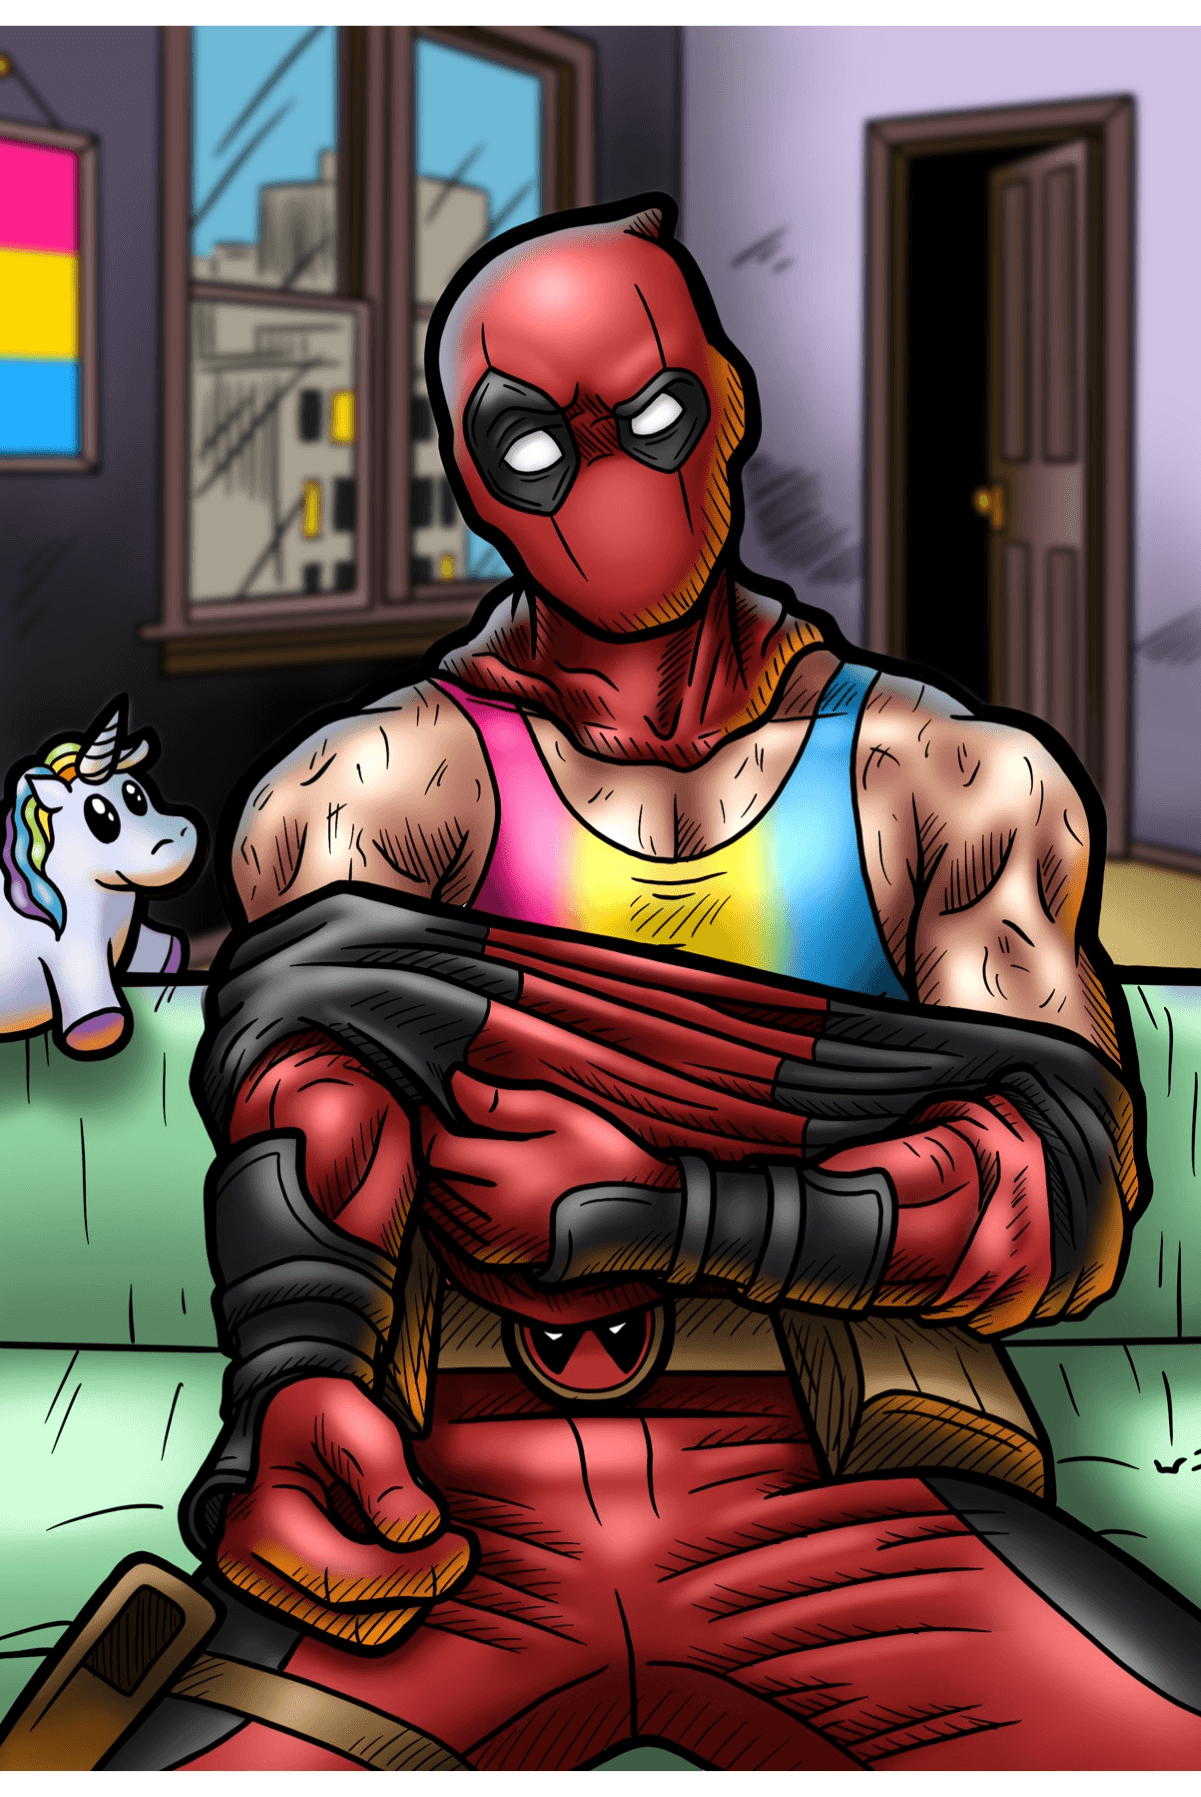 Deadpool pansexual #deadpool #marvel #art #comics